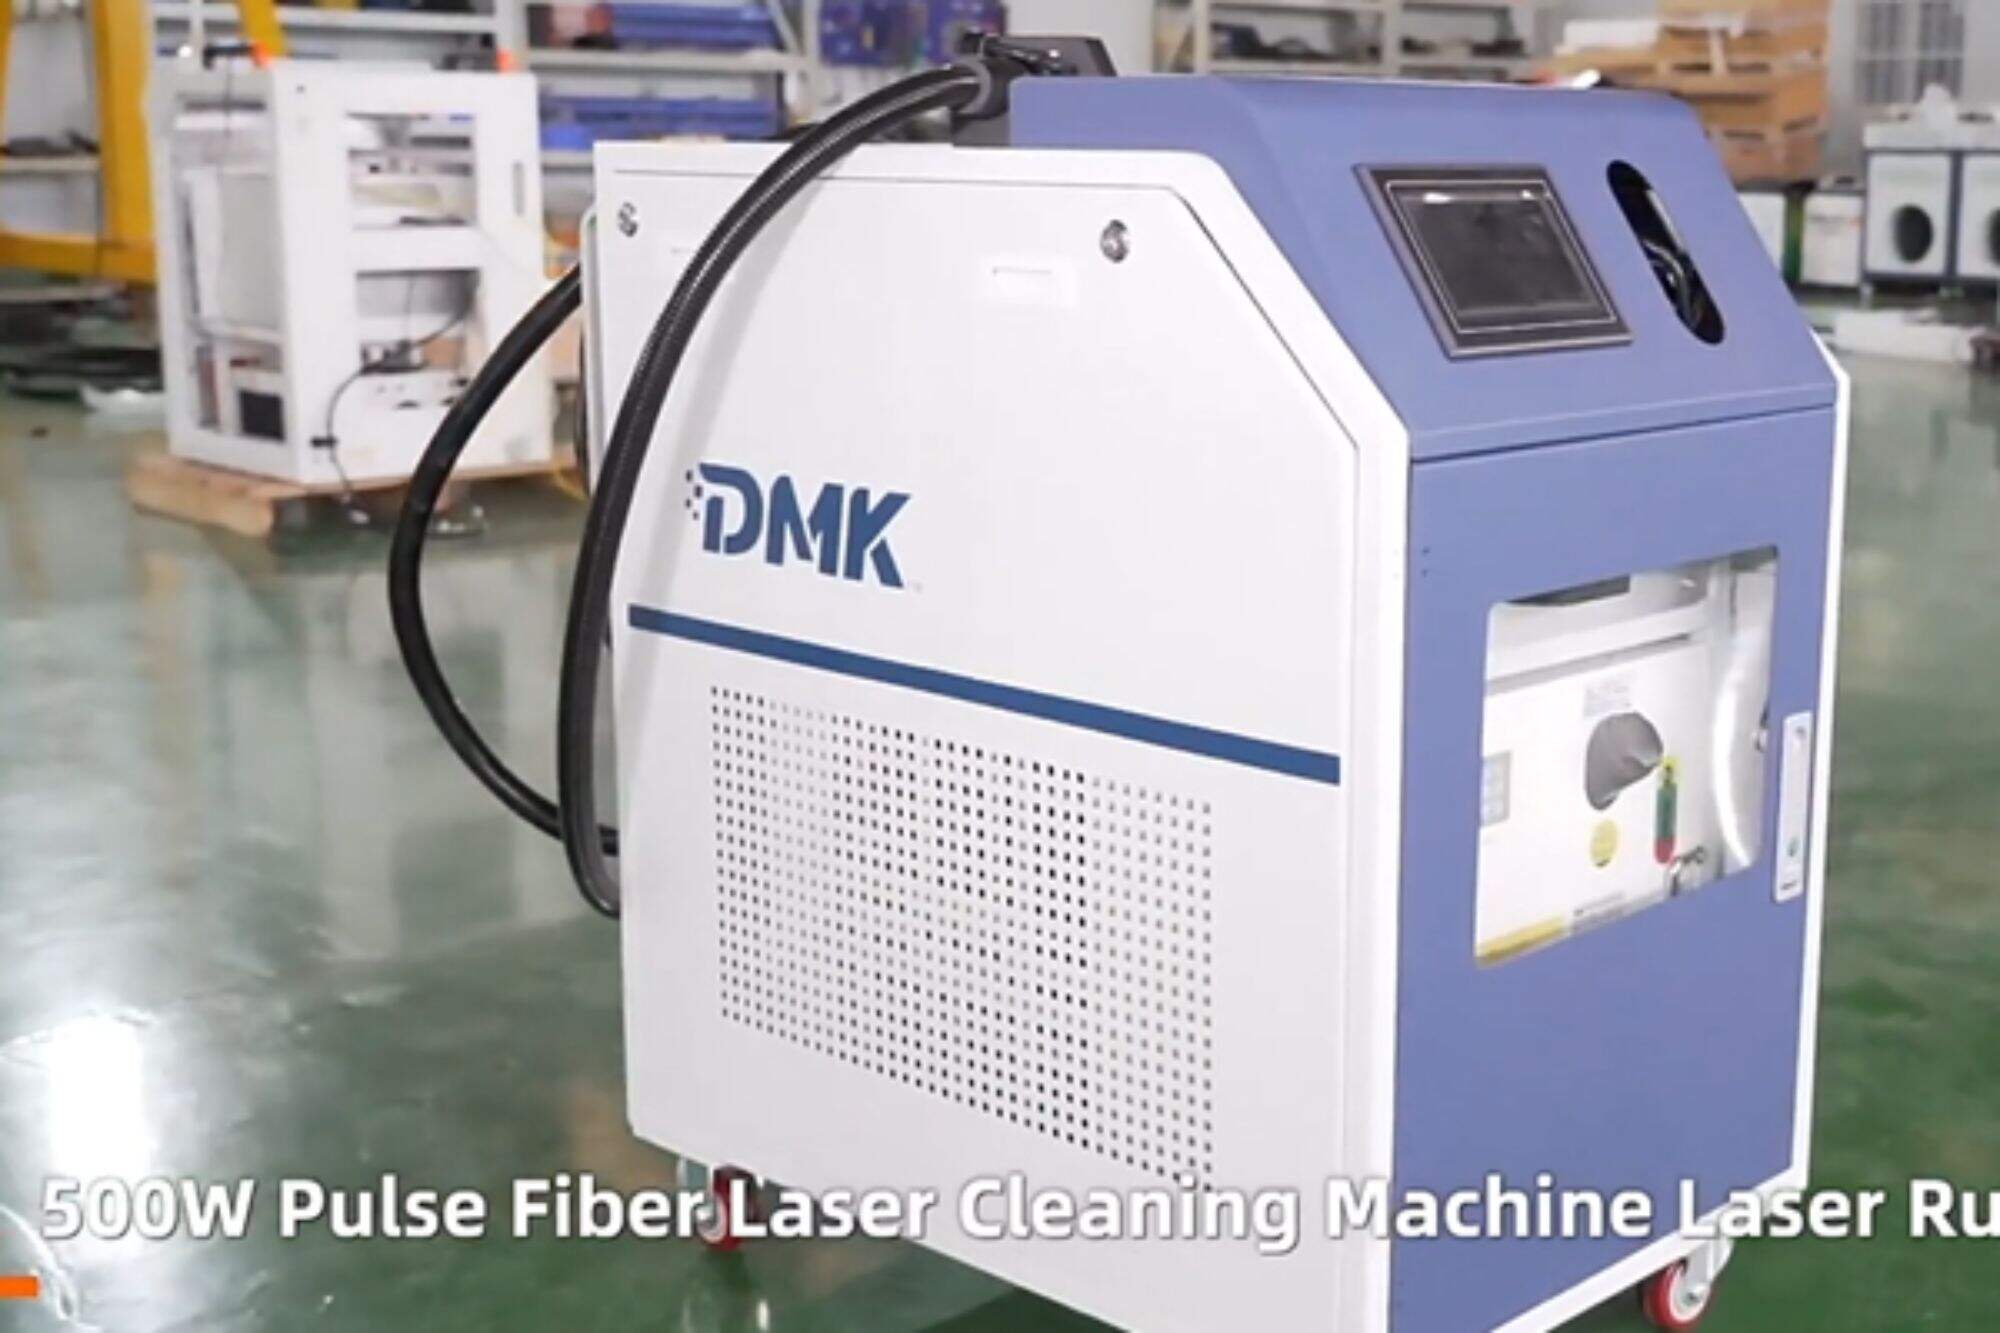 Macchina per la pulizia laser a impulsi DMK 500w